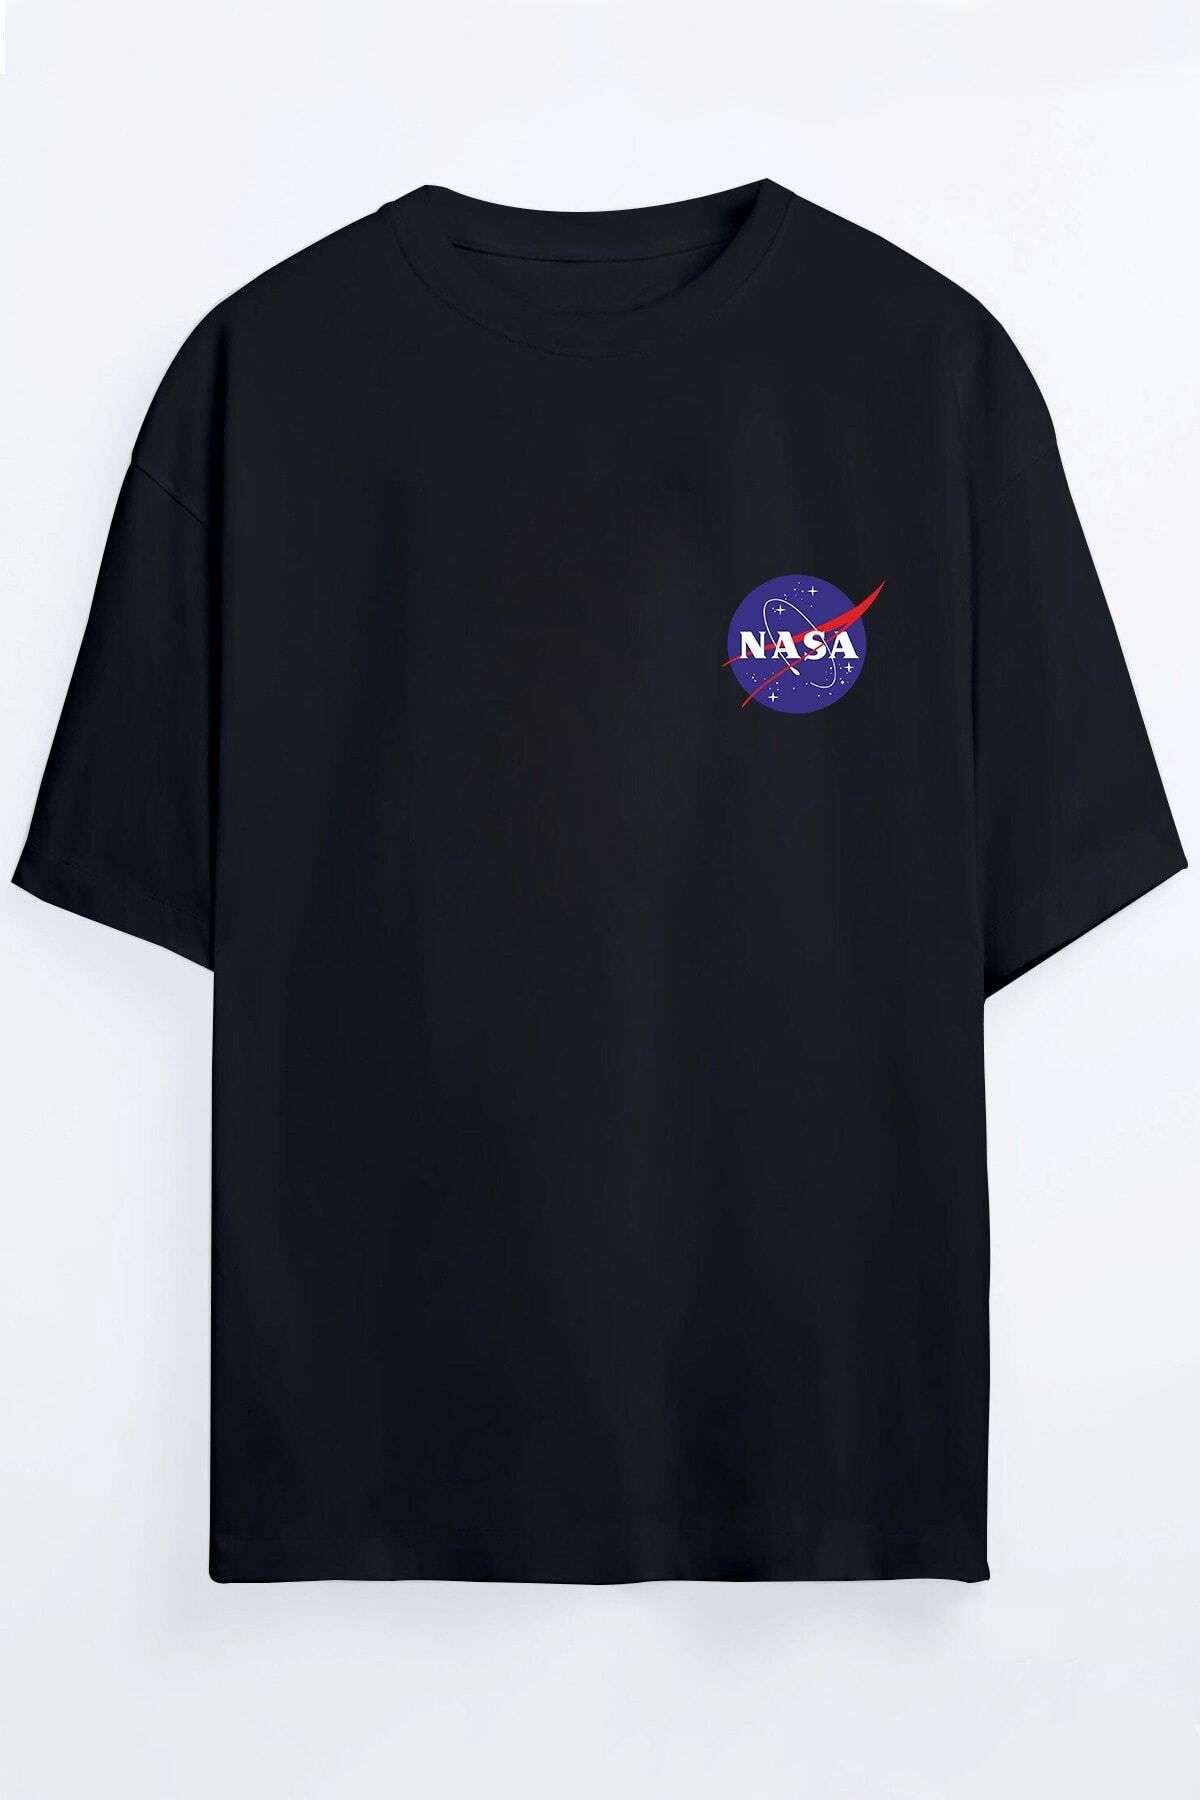 NOVVO Nasa Tasarım Baskılı Oversize T-shirt ( Tişört )